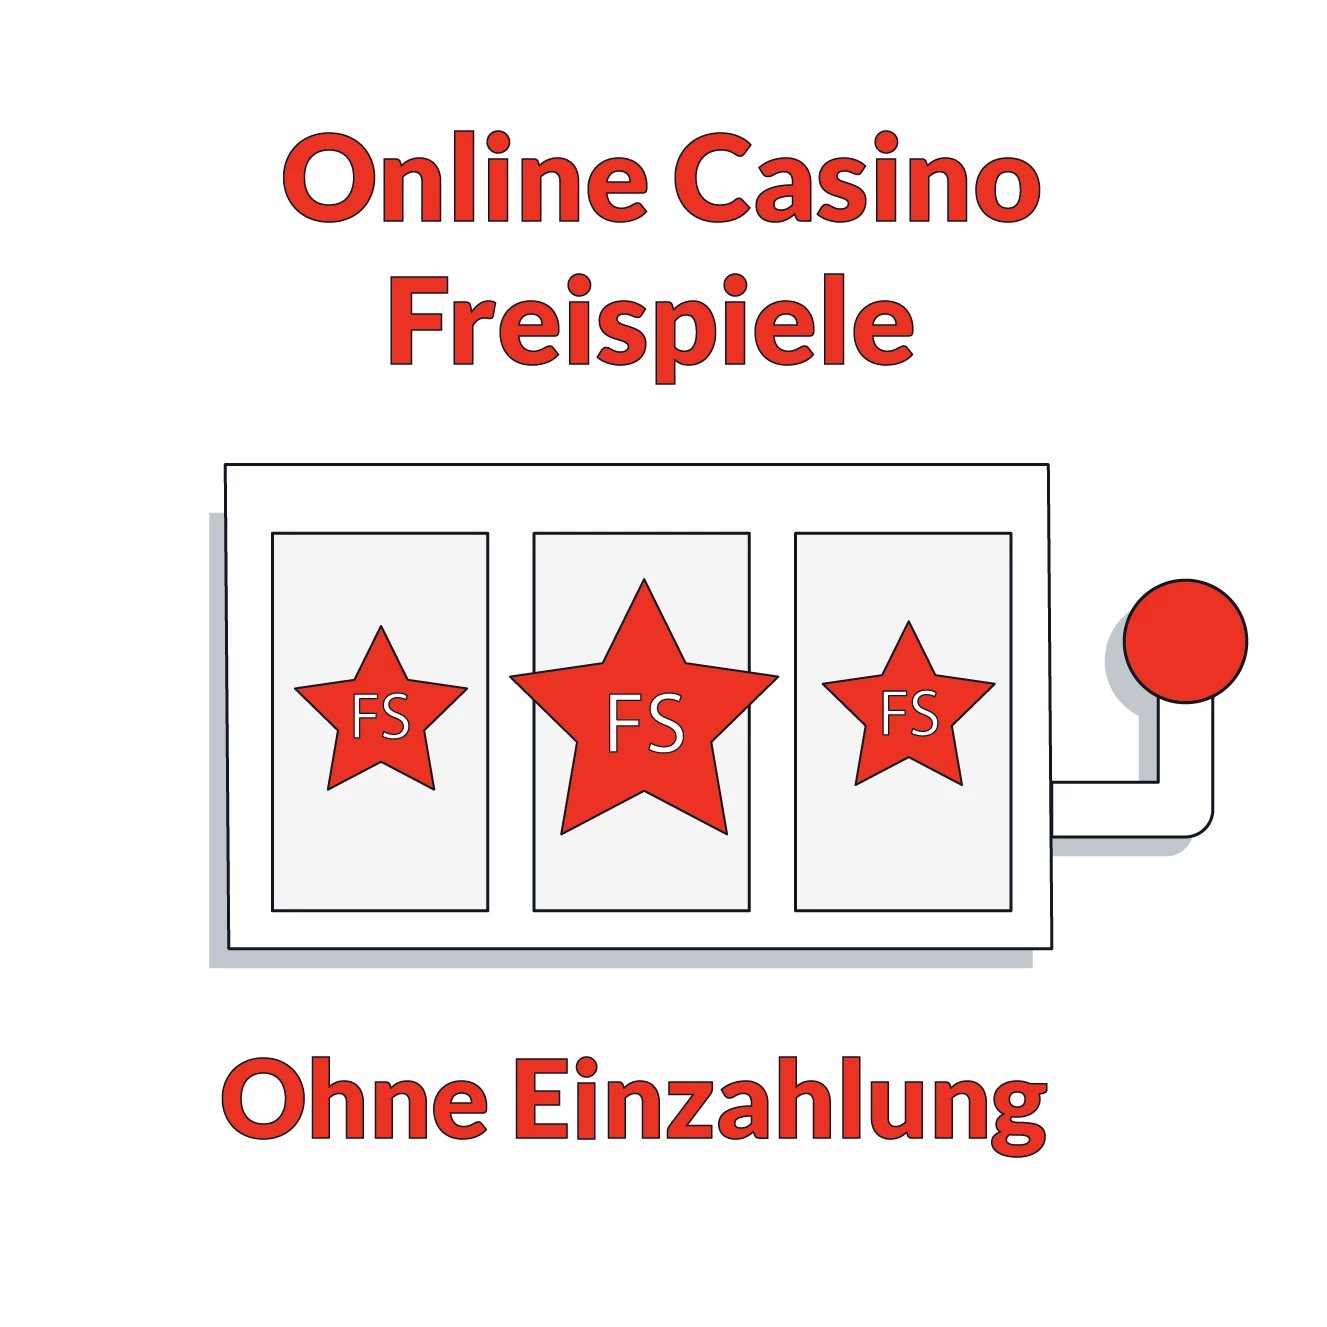 Online Casino Freispiele ohne Einzahlung